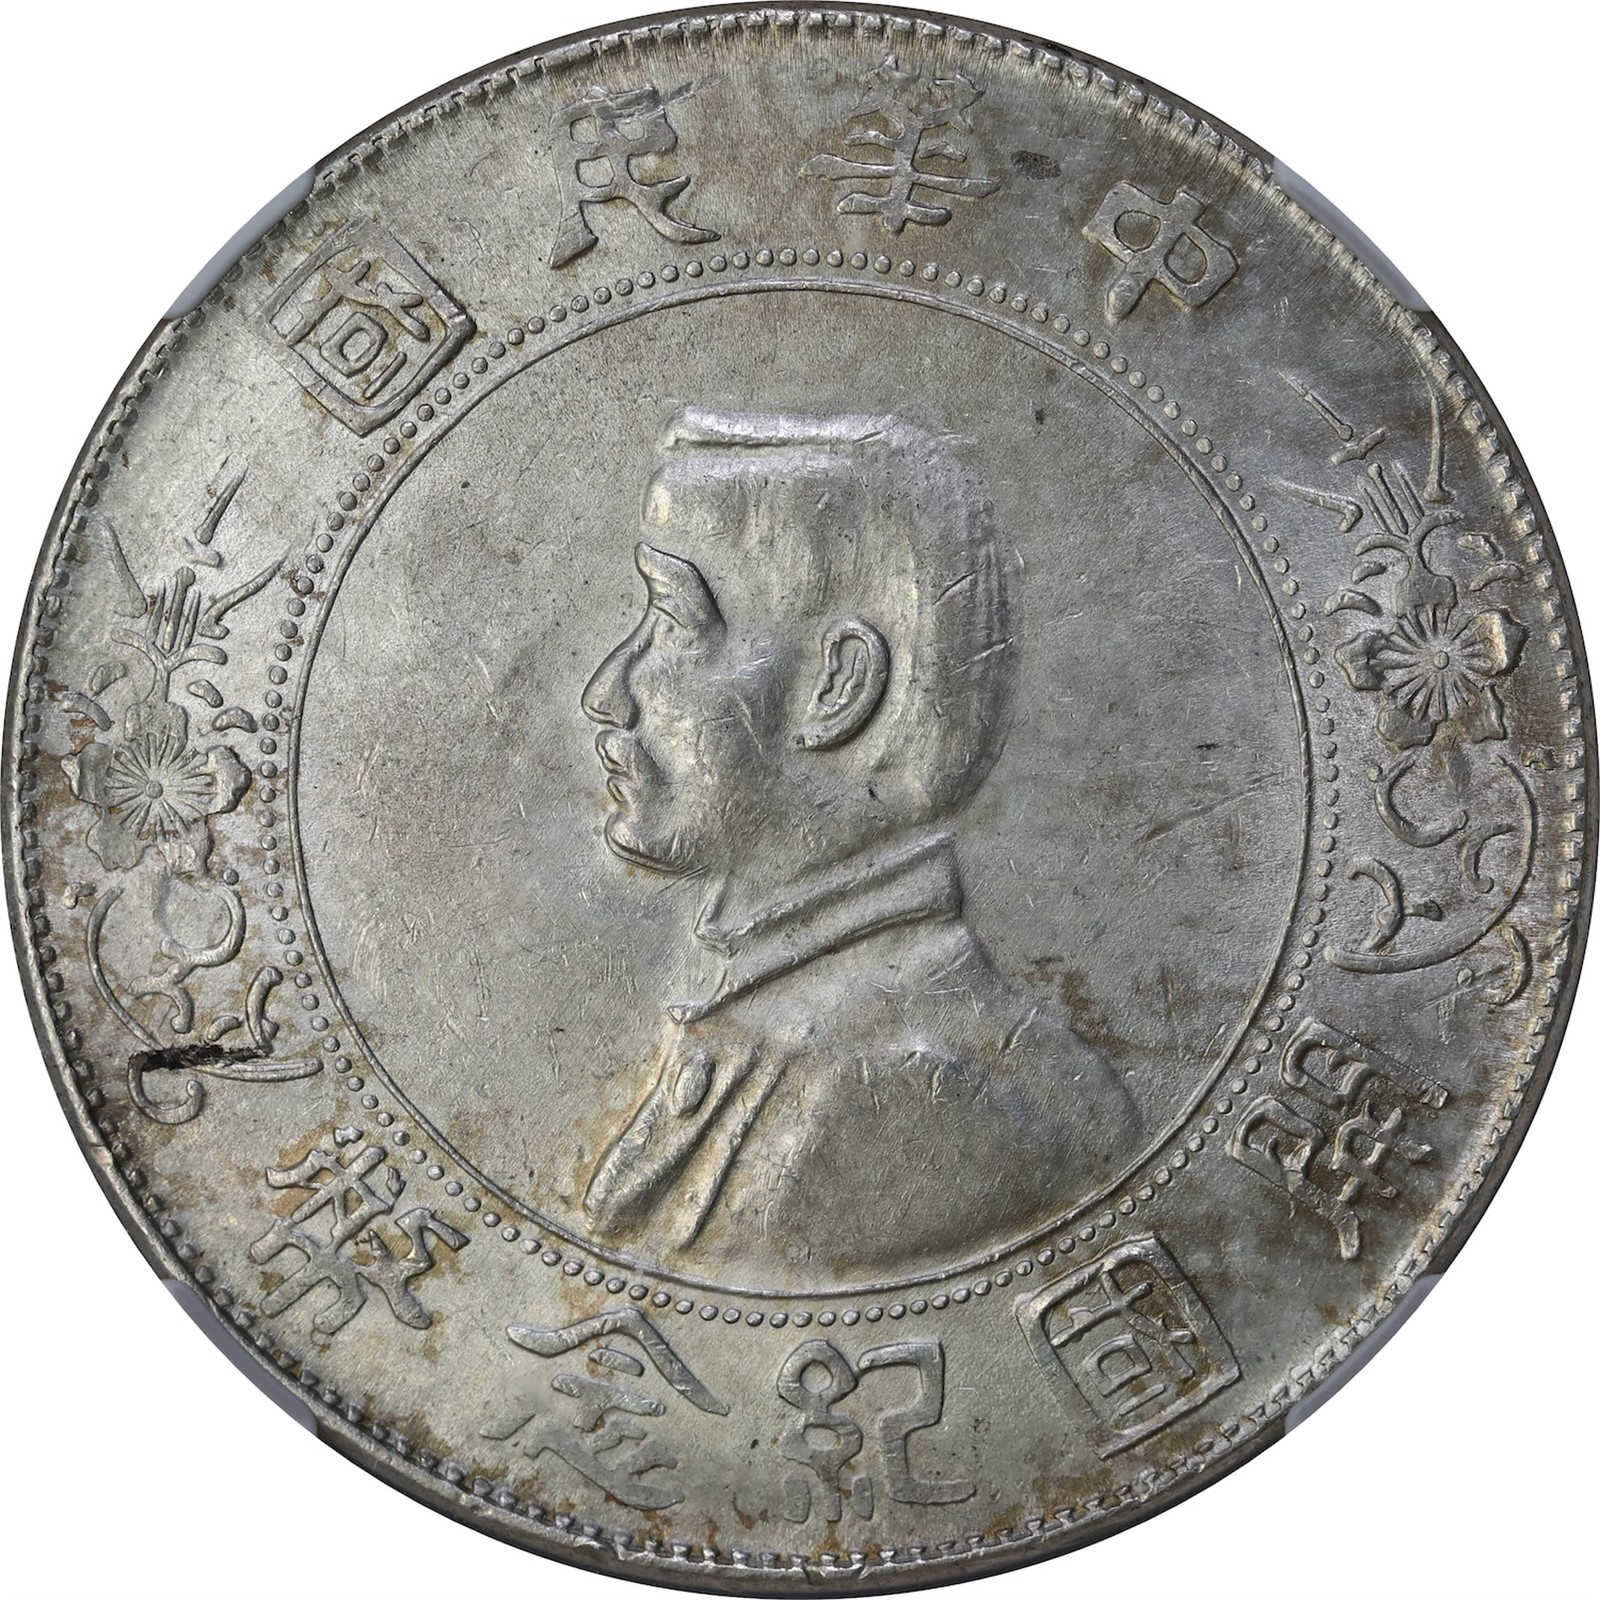 CHINA. REPUBLIC. 1 Dollar 1927 Memento NGC AU58